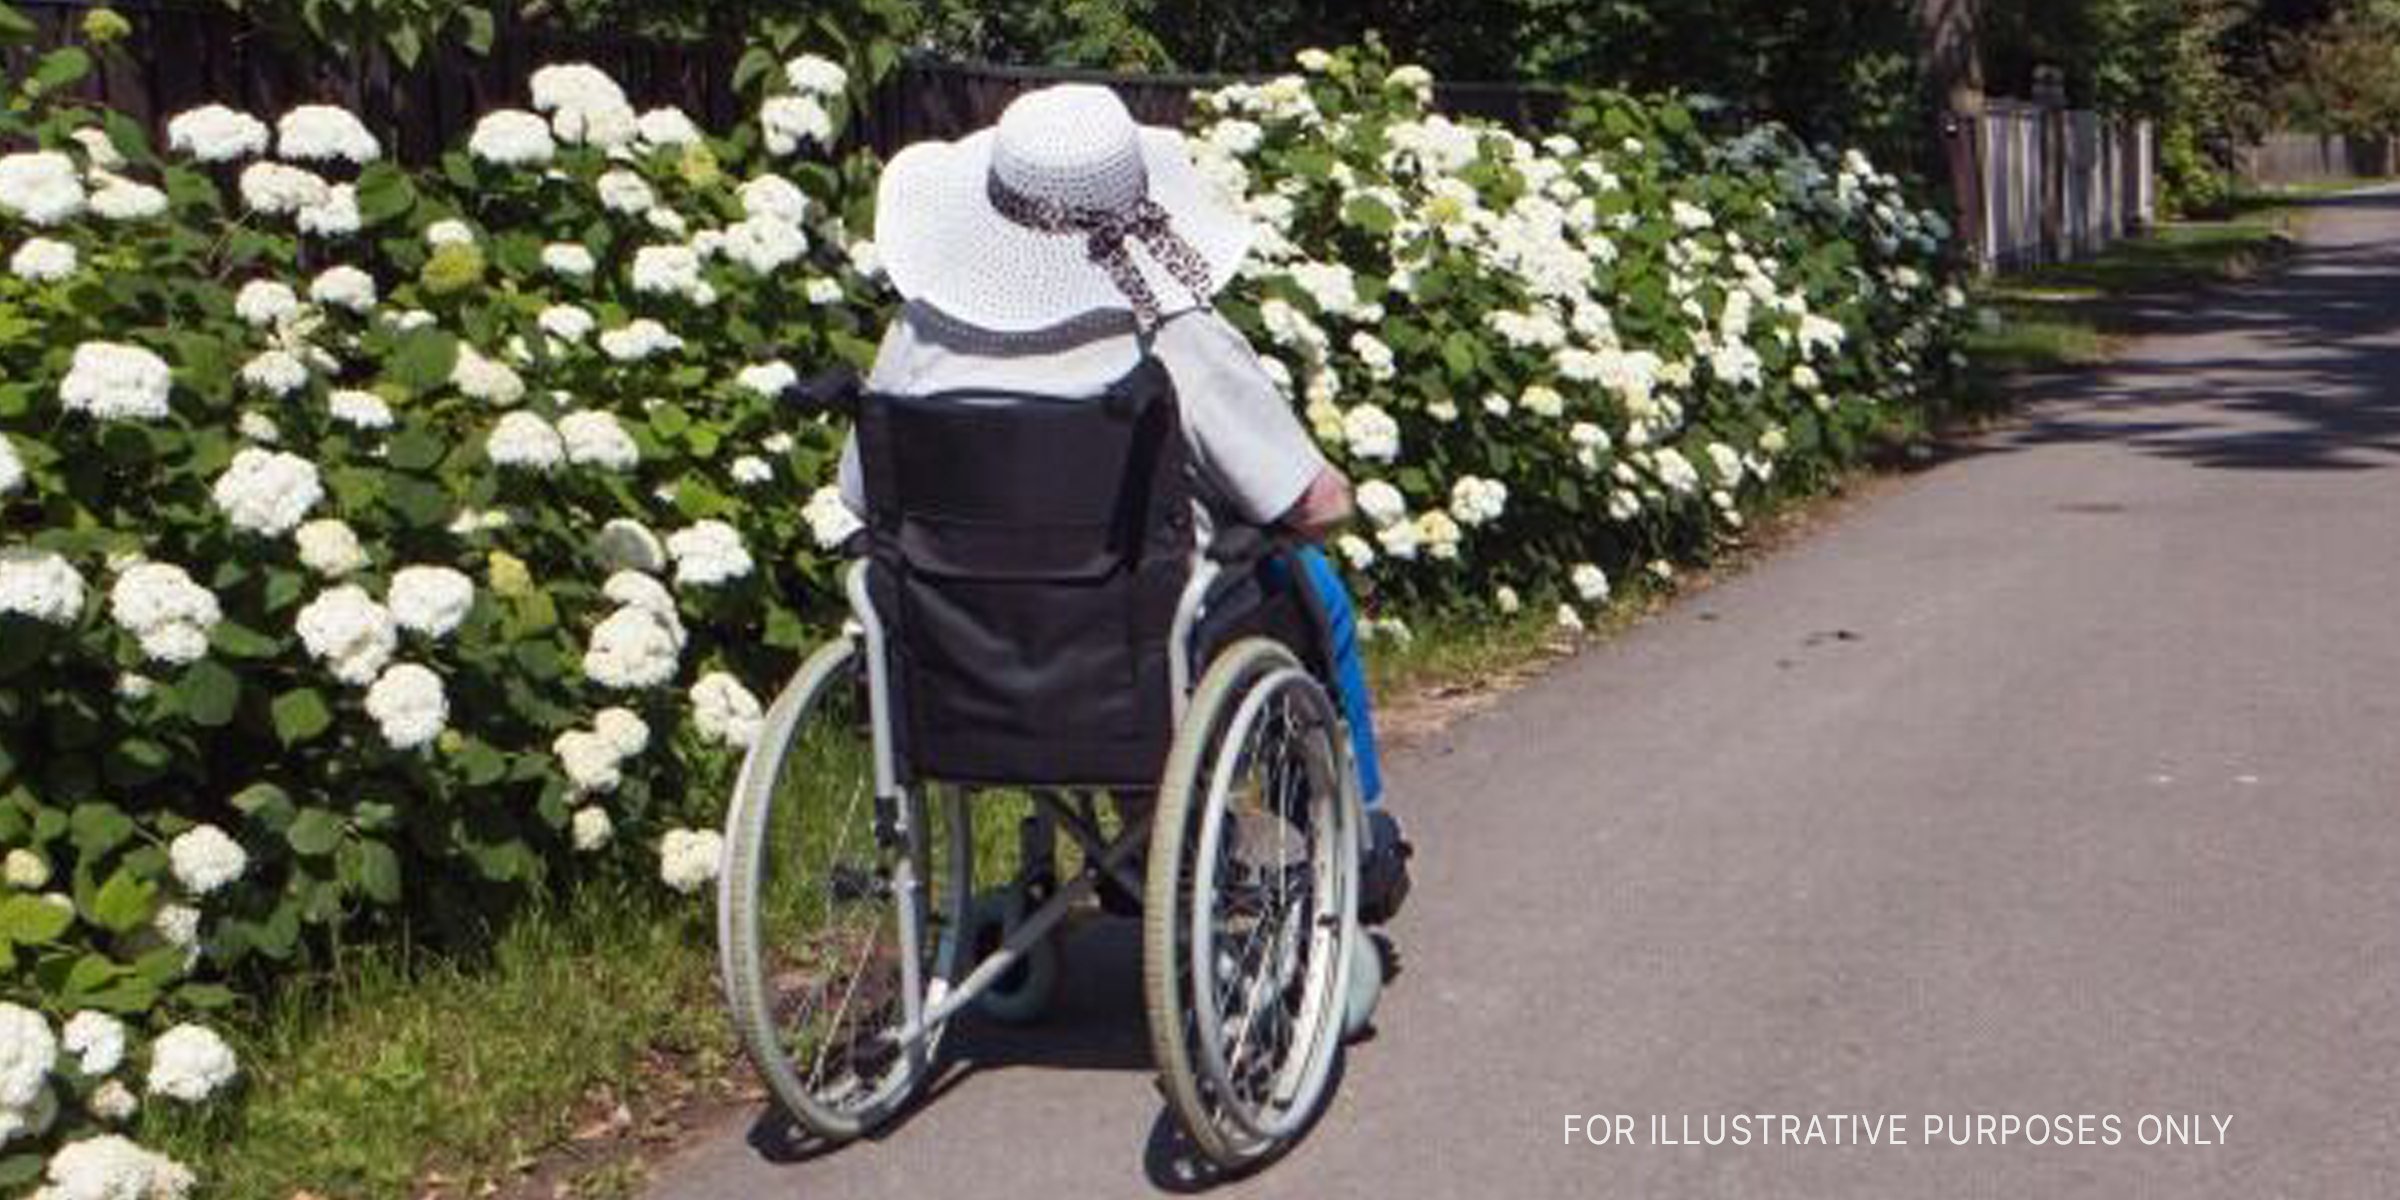 Frau im Rollstuhl vor Blumen. | Quelle: Shutterstock